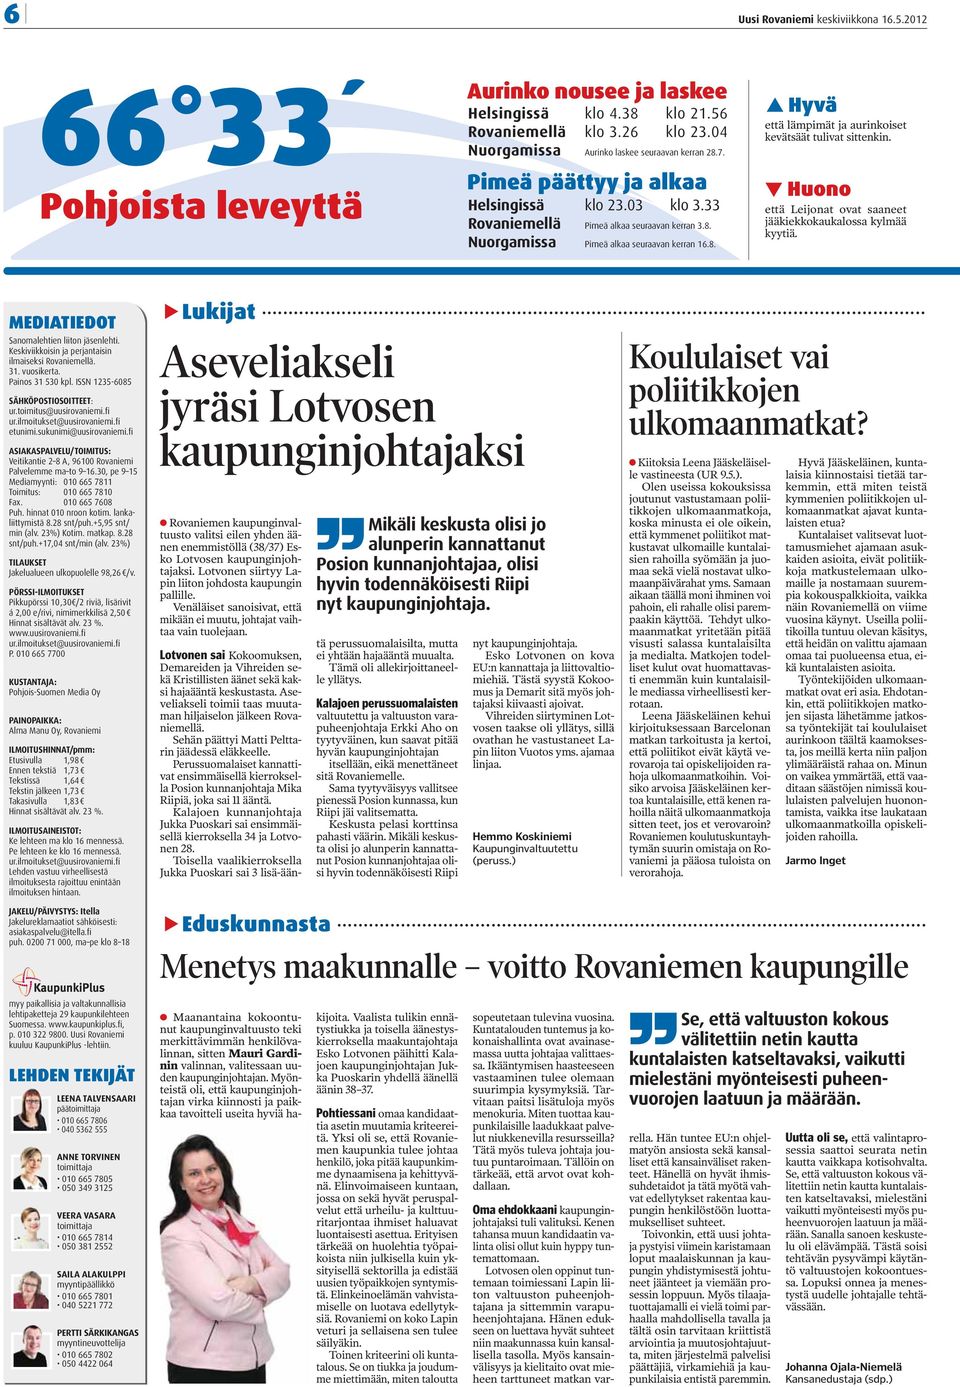 Huono että Leijonat ovat saaneet jääkiekkokaukalossa kylmää kyytiä. MEDIATIEDOT Sanomalehtien liiton jäsenlehti. Keskiviikkoisin ja perjantaisin ilmaiseksi Rovaniemellä. 31. vuosikerta.